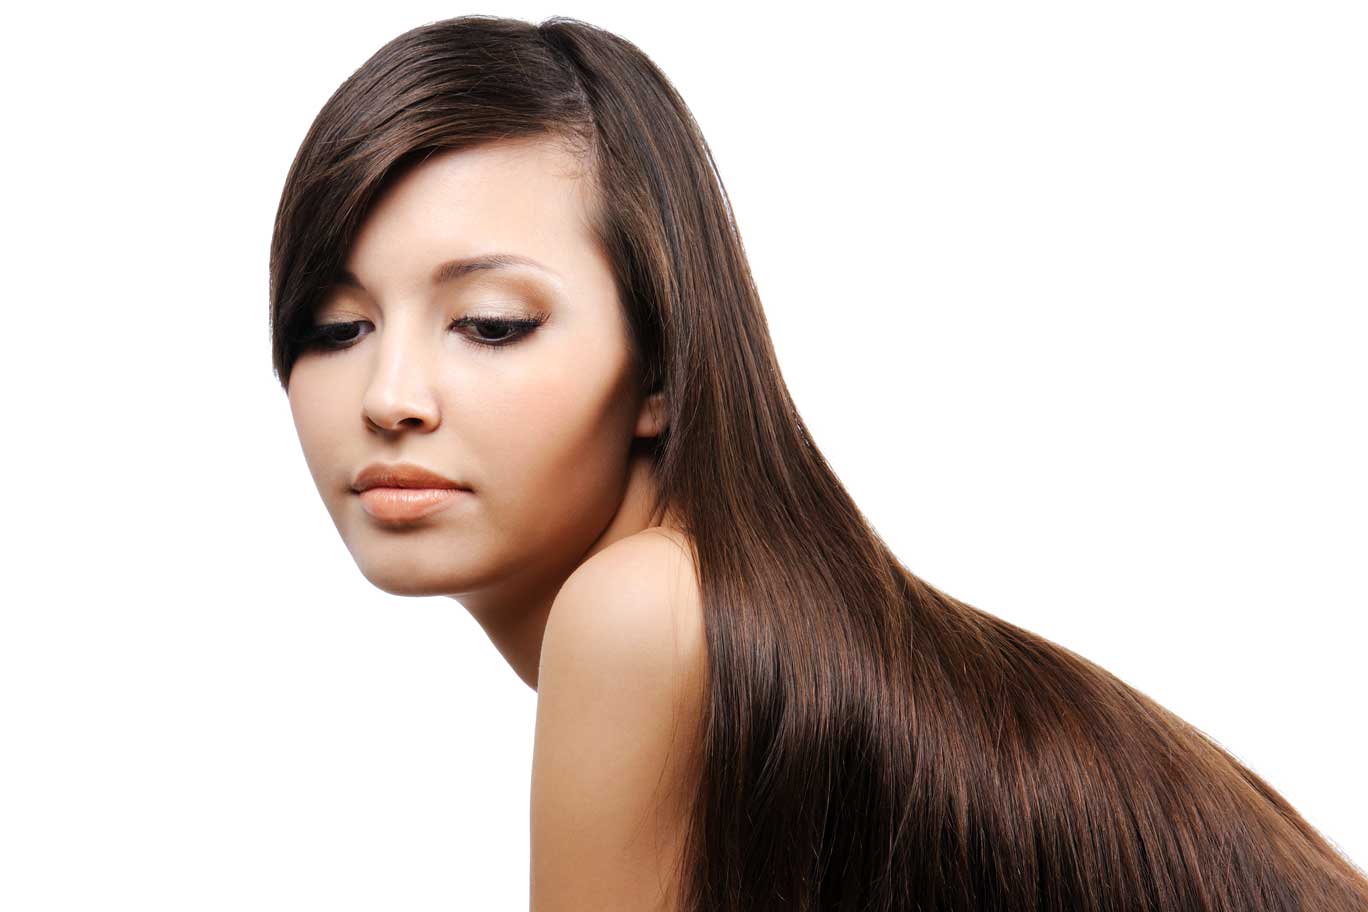 Straightening & Rebonding - Hair Salon Treatments, Salon in Dubai